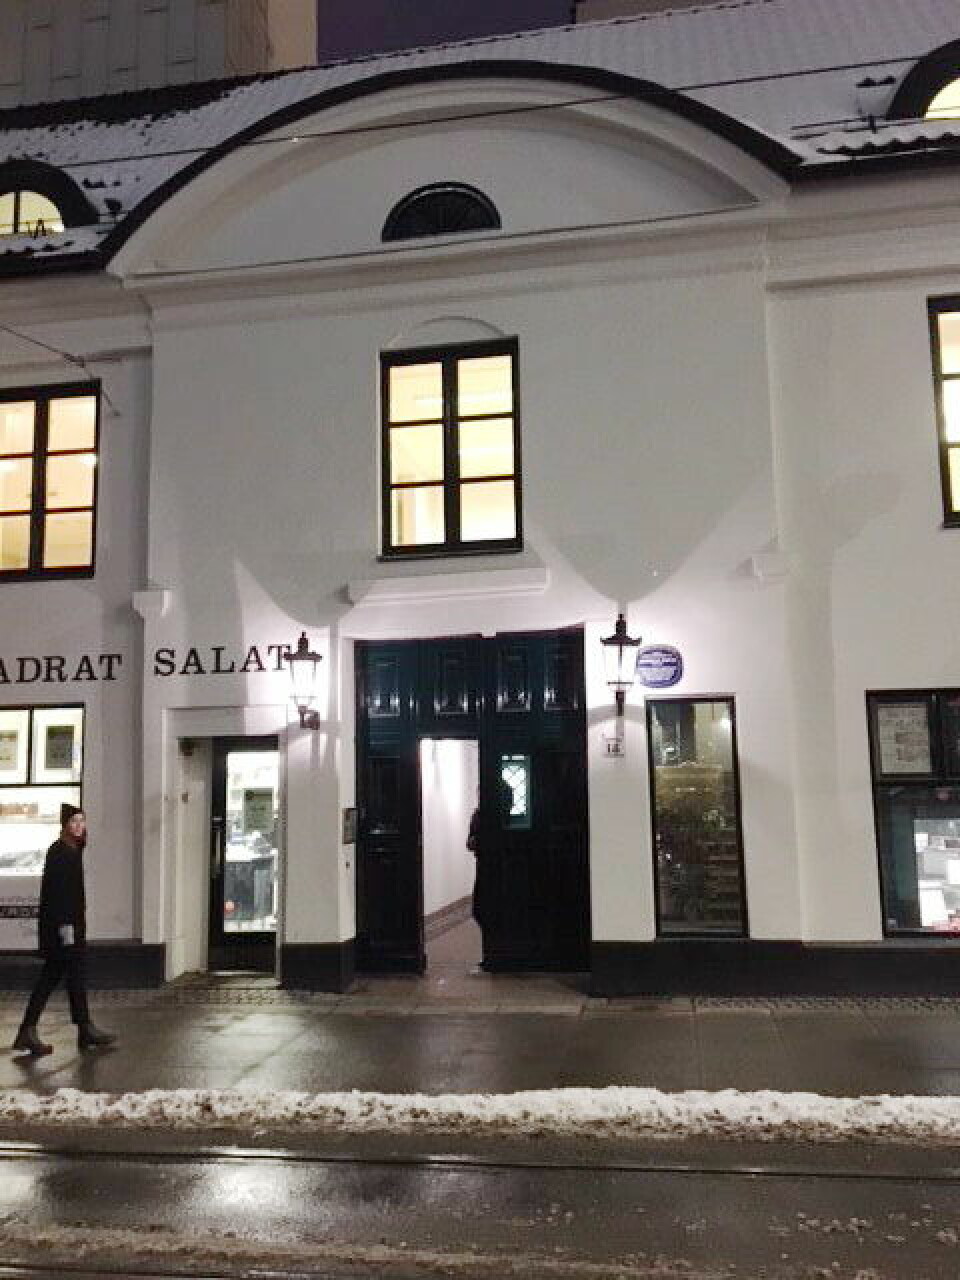 Restaurant Einer ligger i Prinsens gate i Oslo. (Foto: Restaurant Einer)